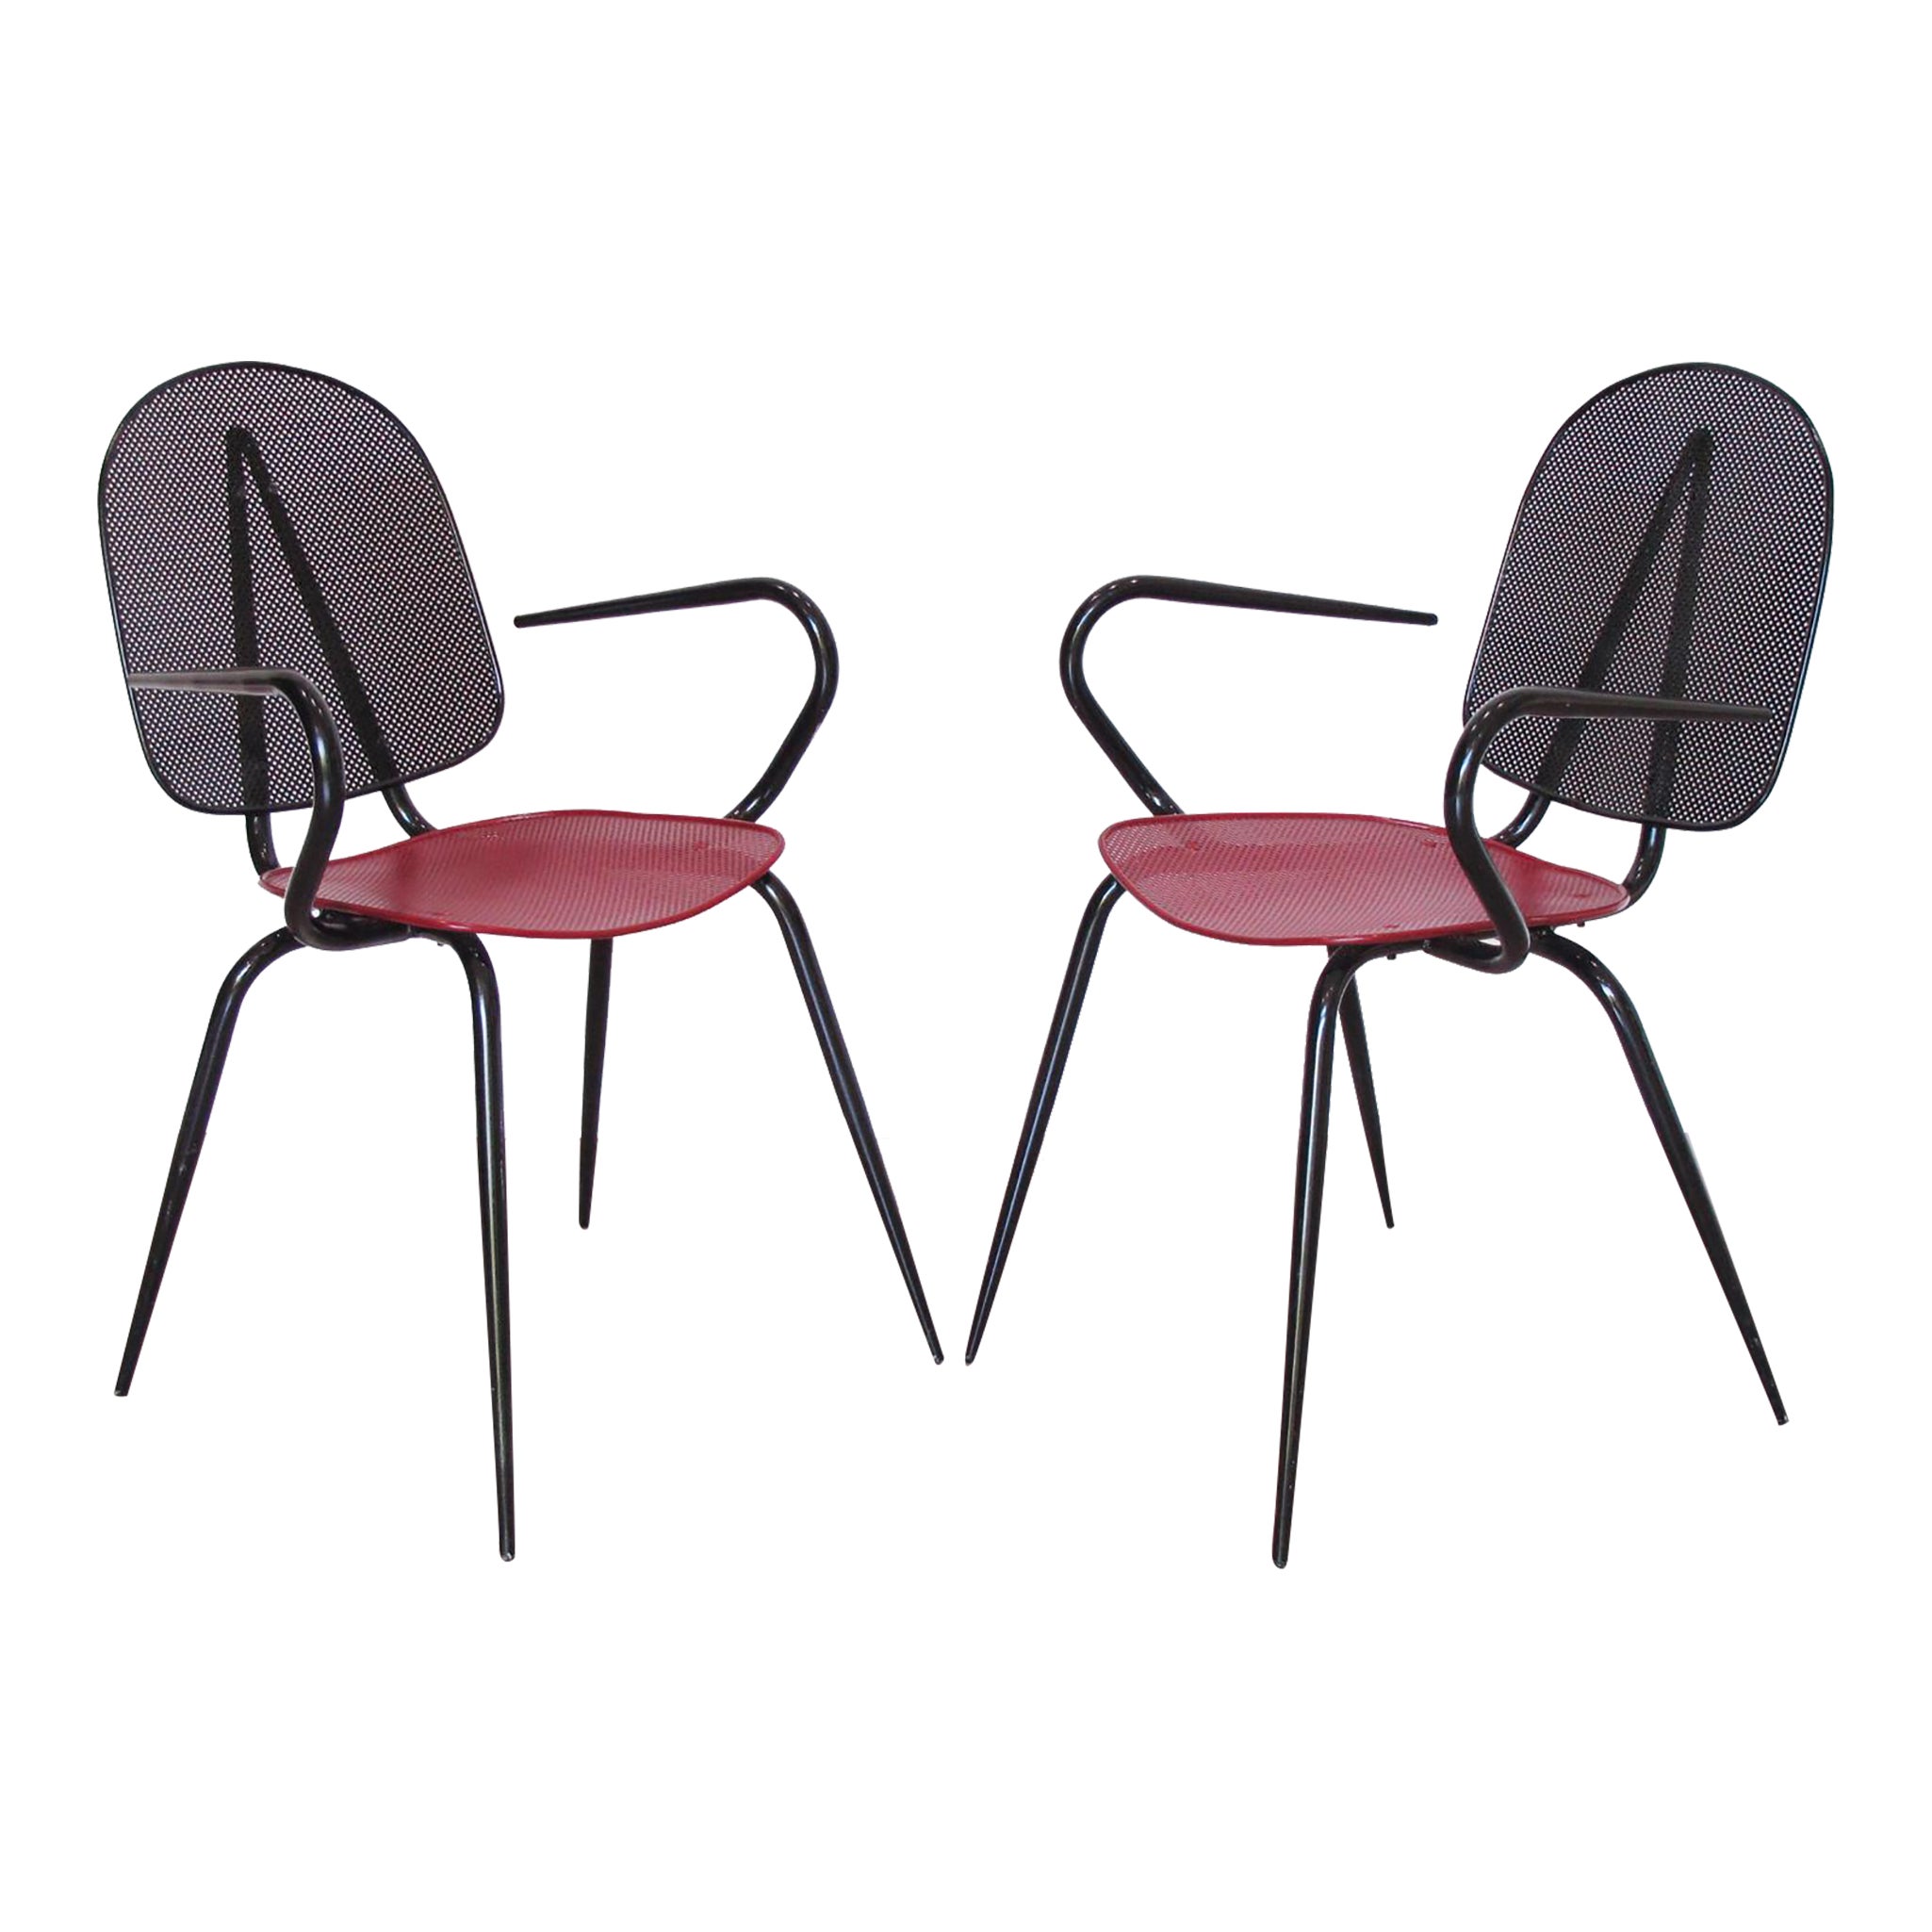 Chaise ou fauteuil en métal noir et rouge de style Mathieu Mategot, une paire